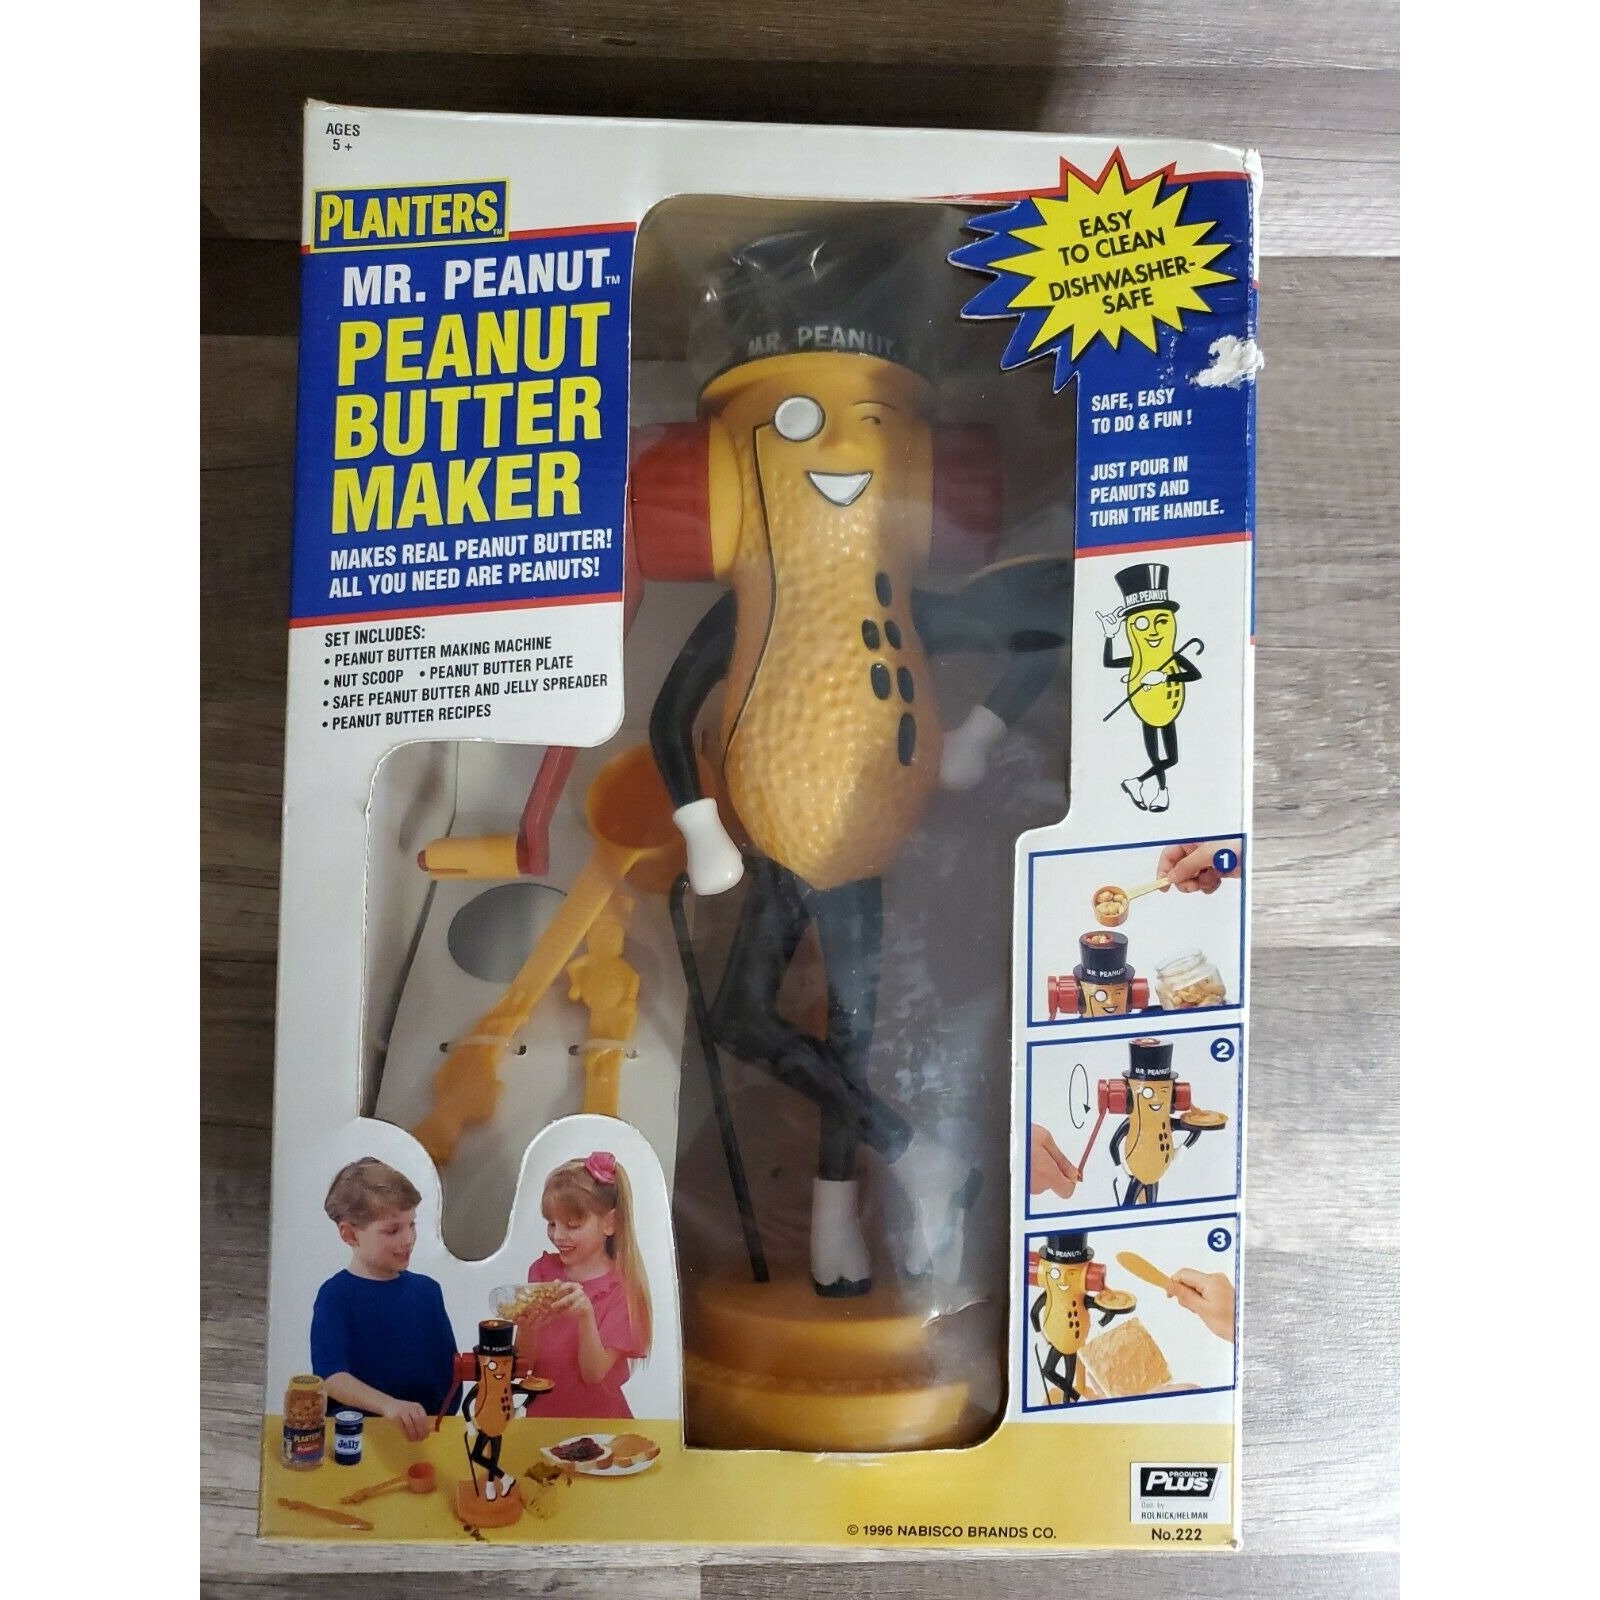 homemade sex toy peanut butter